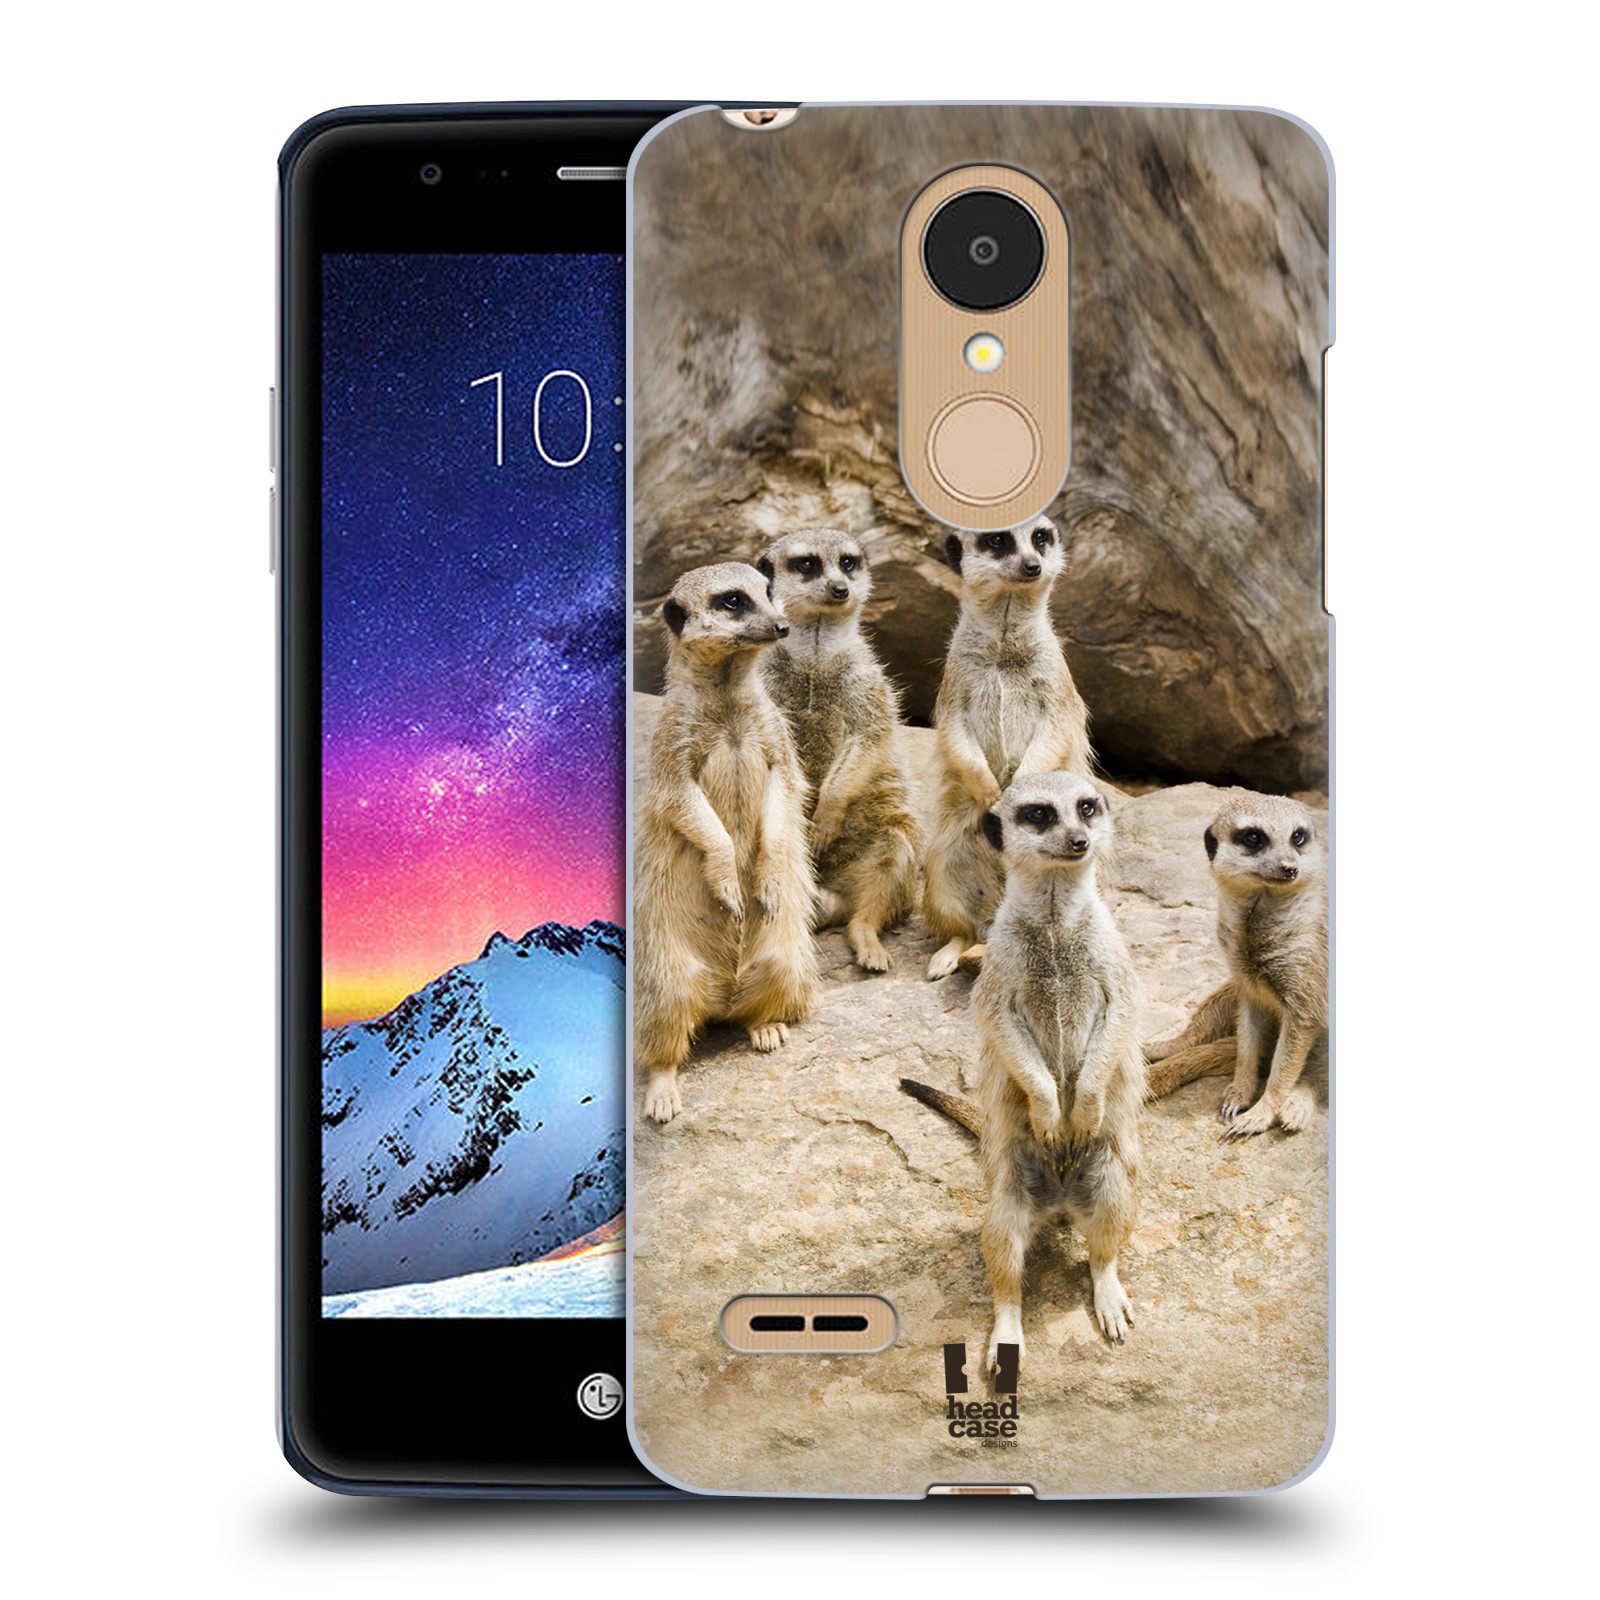 HEAD CASE plastový obal na mobil LG K9 / K8 2018 vzor Divočina, Divoký život a zvířata foto SURIKATA